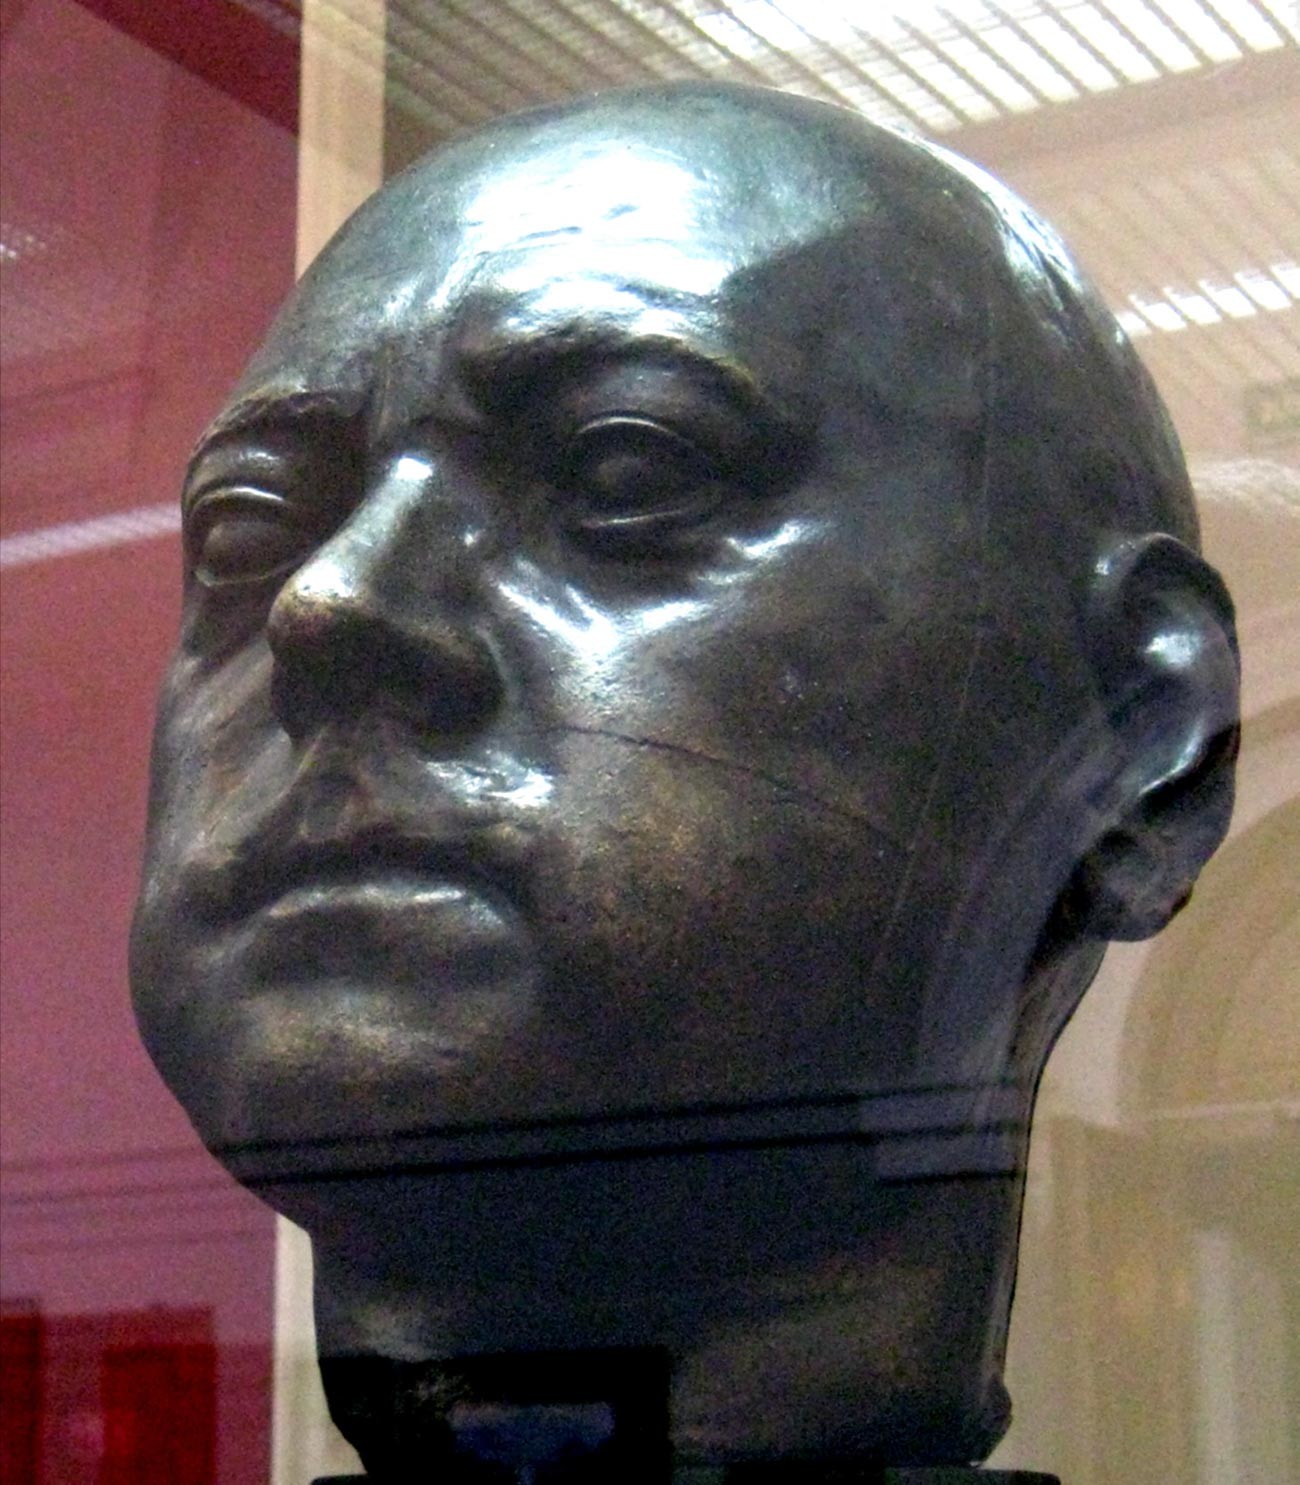 Posmrtna maska ruskog cara Petra Prvog.

